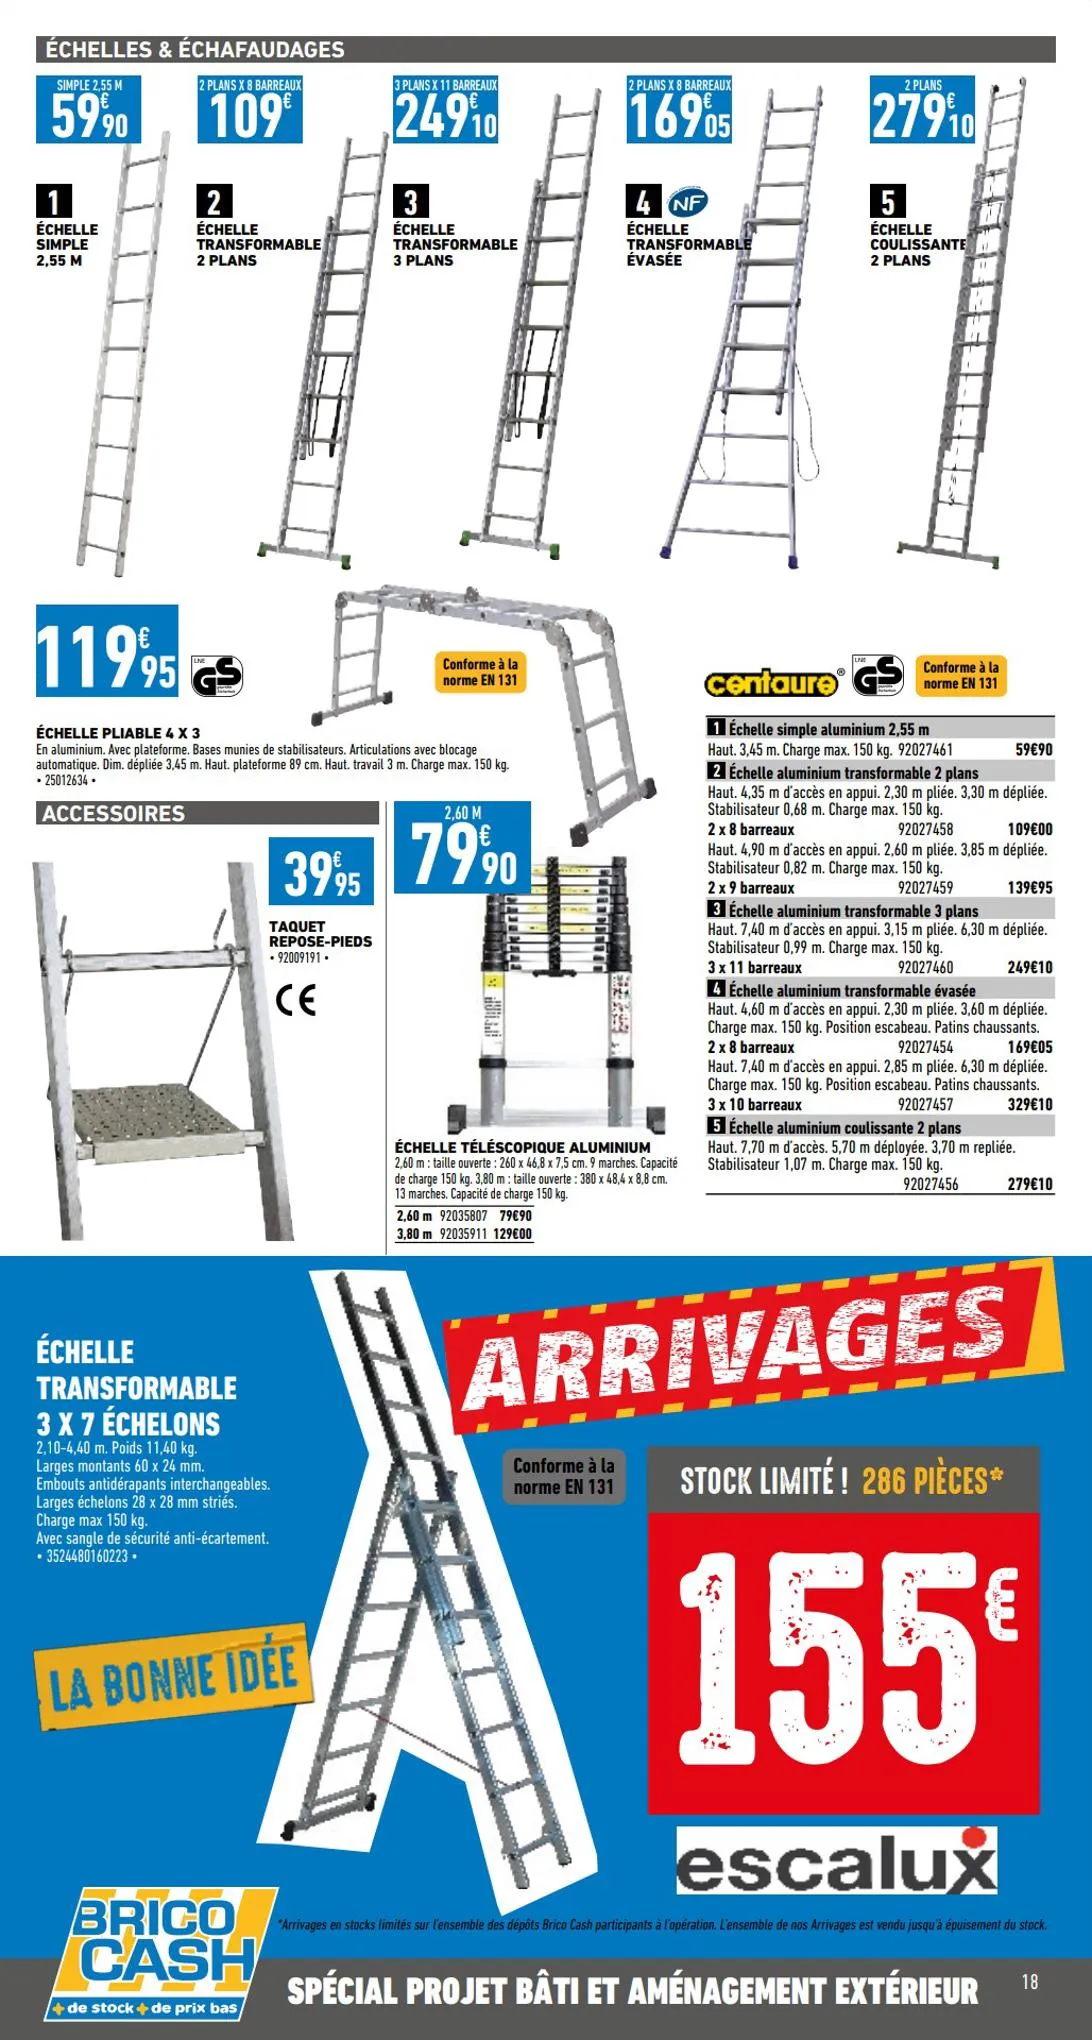 Catalogue Catalogue bâti & aménagement extérieur, page 00018